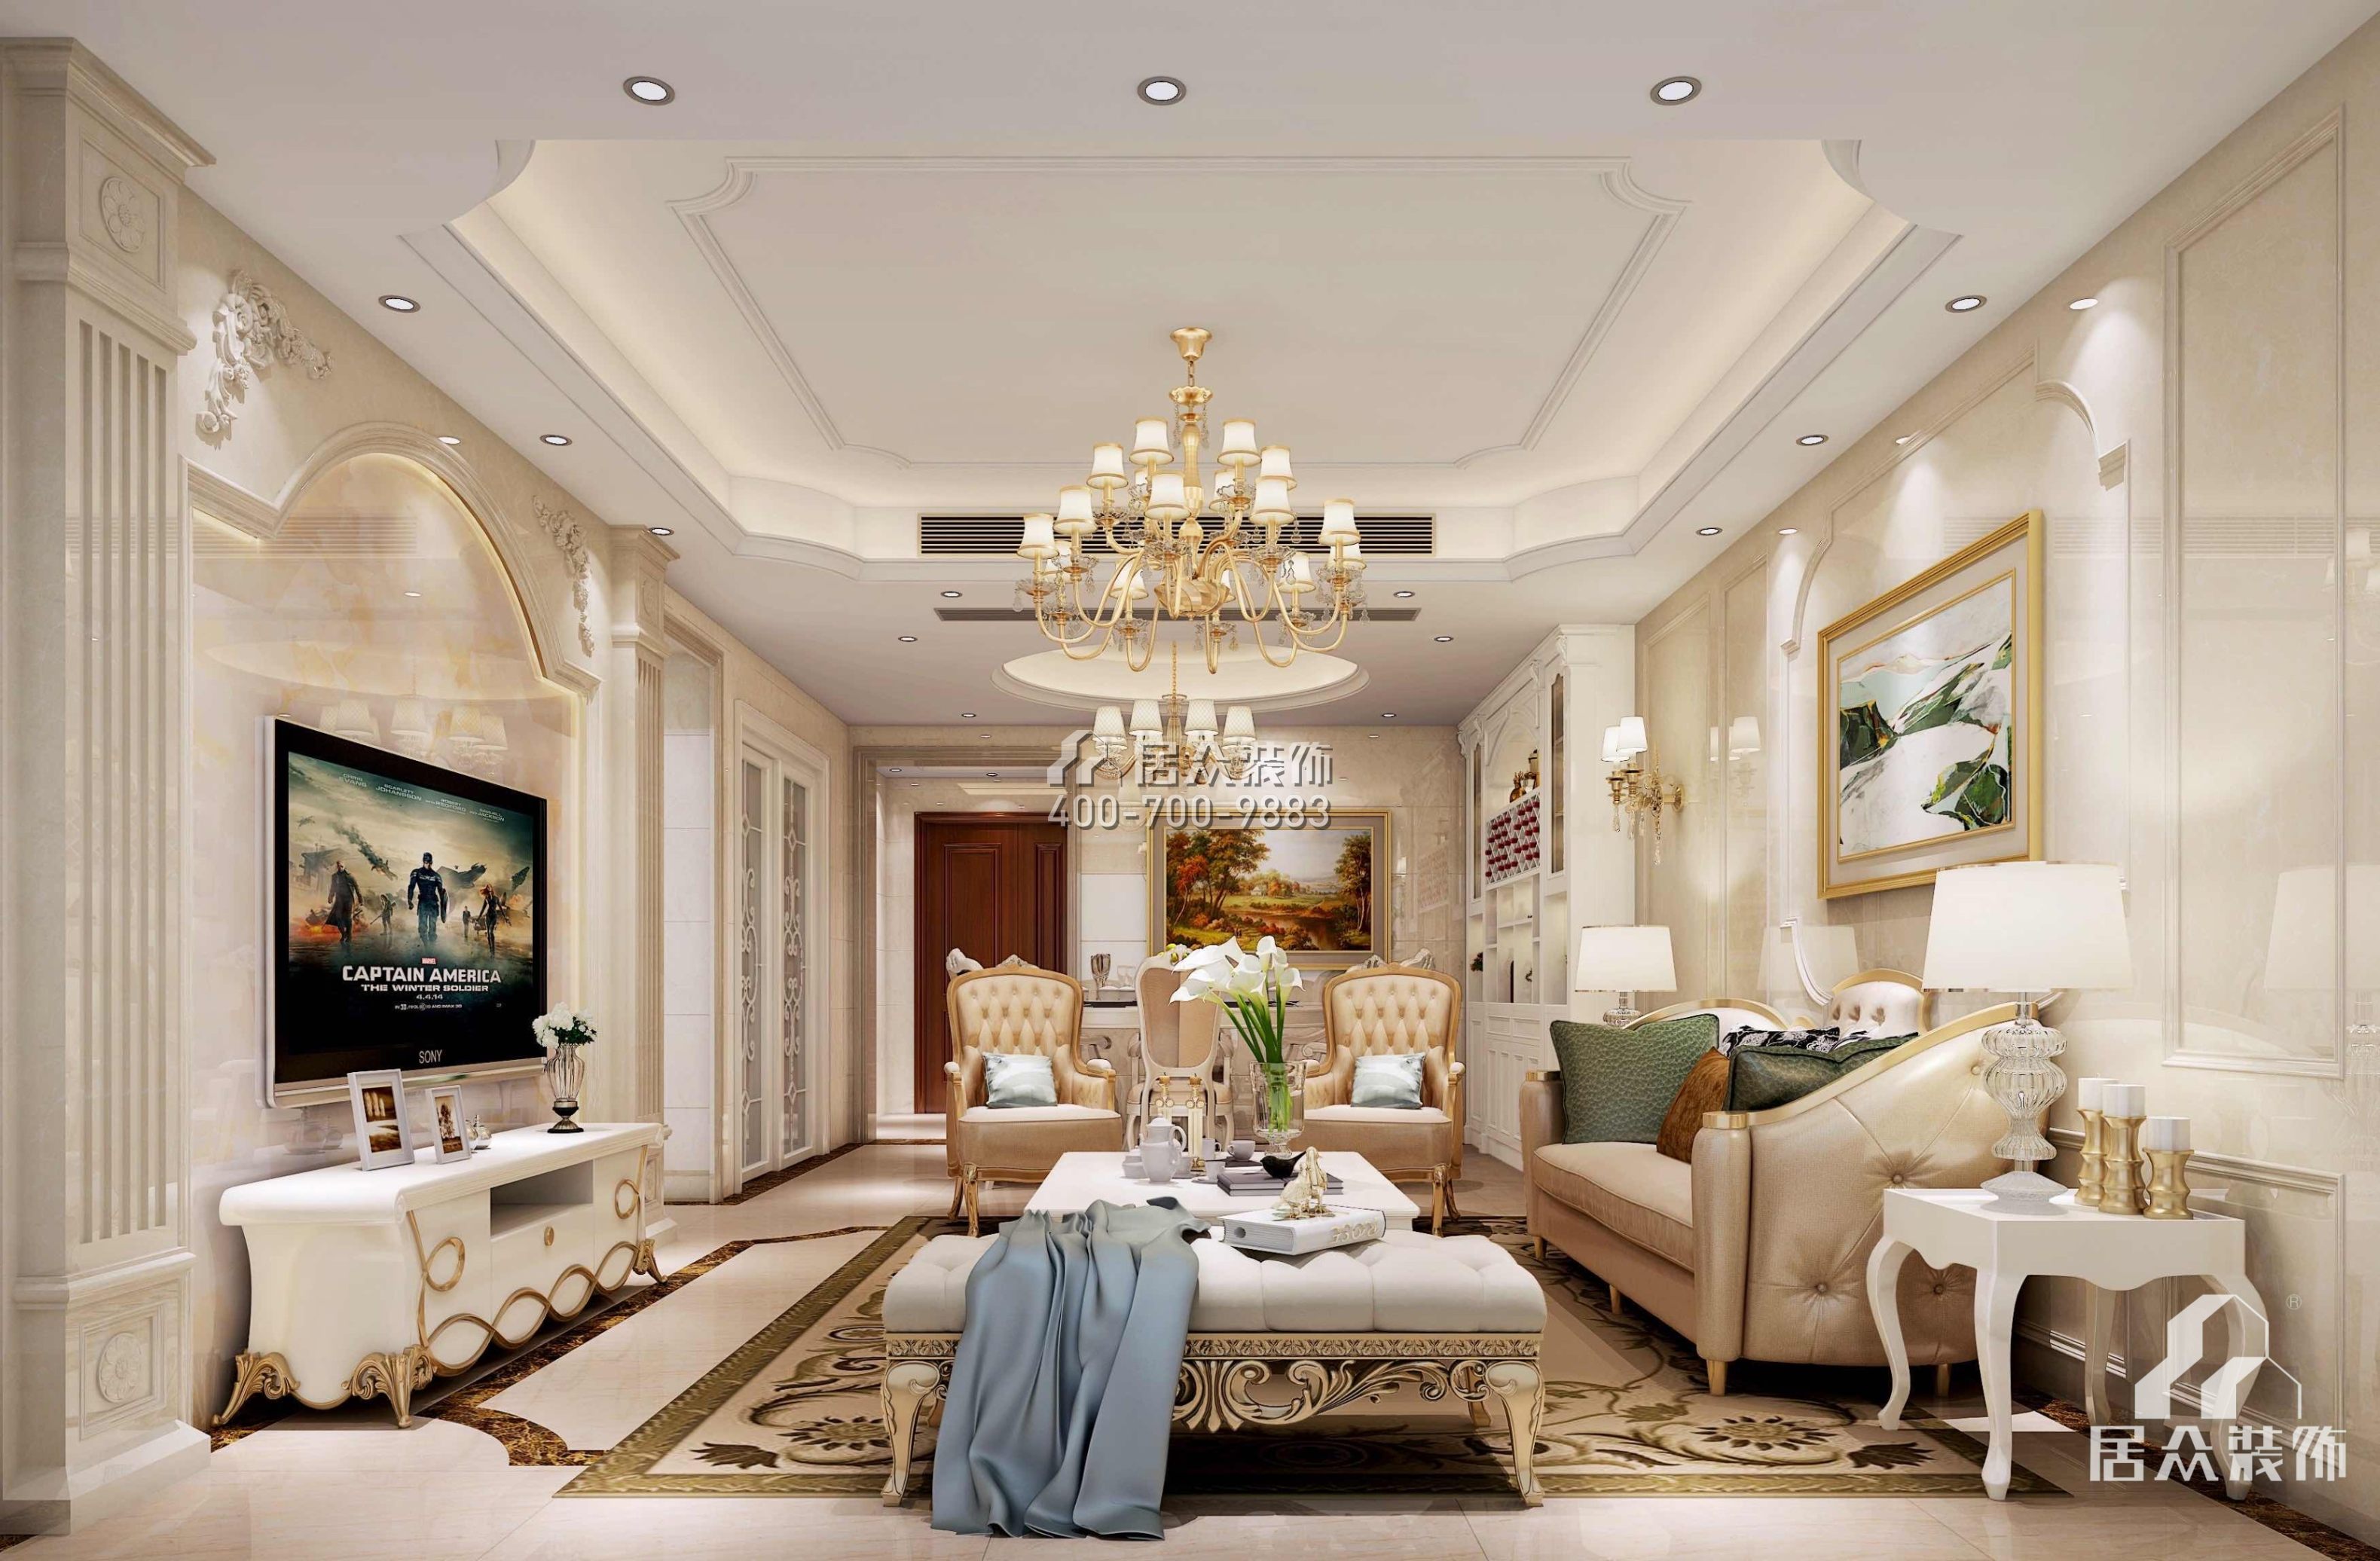 南峰華桂園120平方米歐式風格平層戶型客廳裝修效果圖